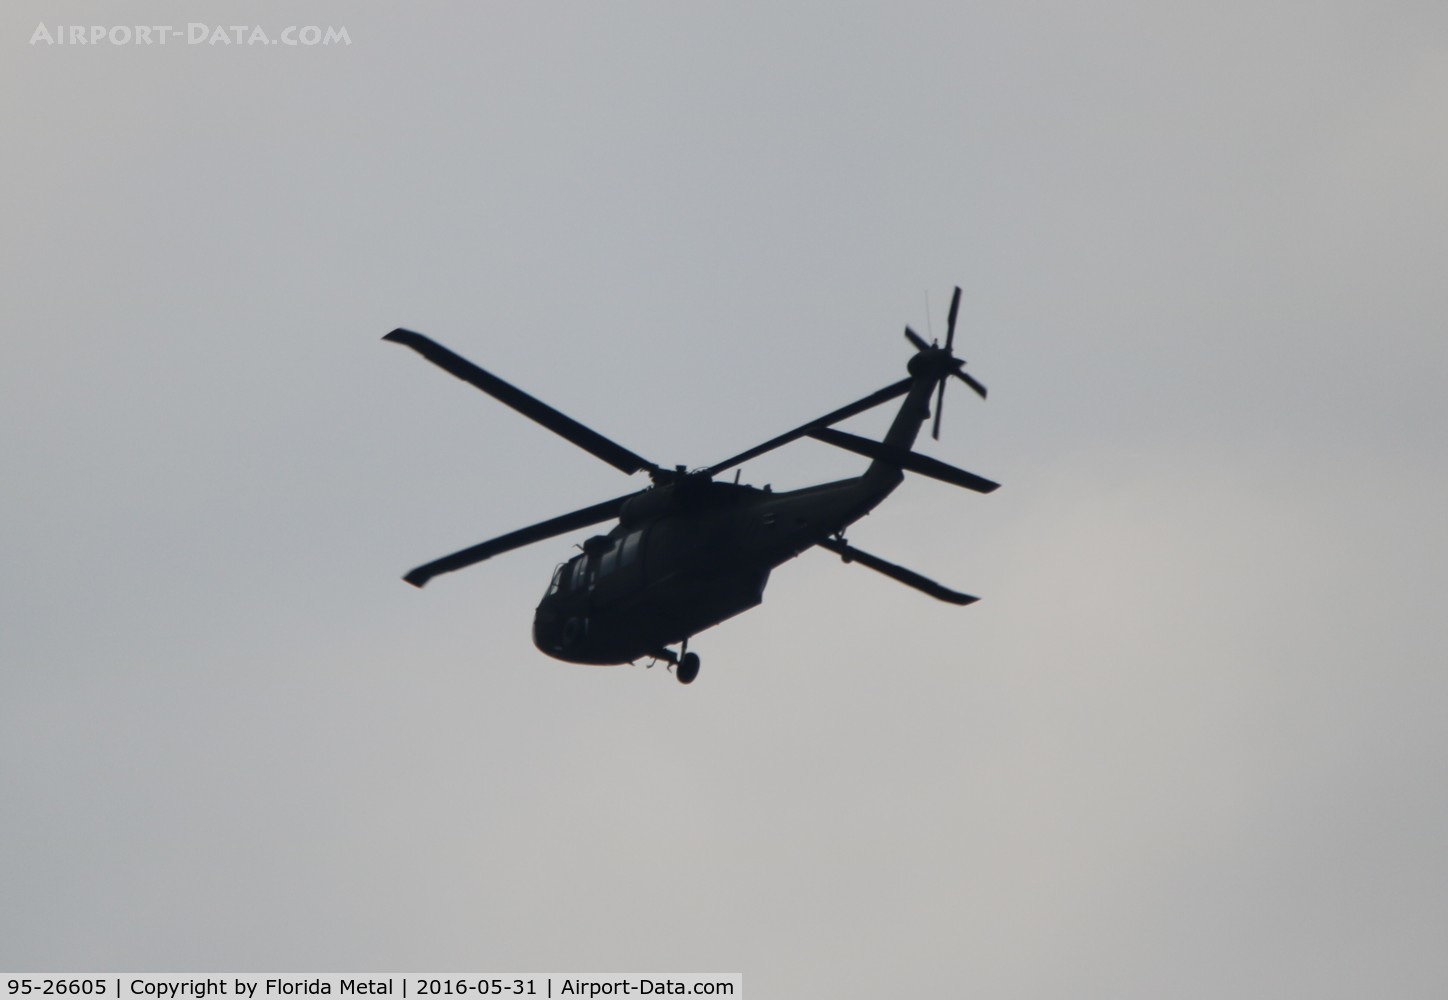 95-26605, 1995 Sikorsky UH-60L Black Hawk C/N 70-2122, UH-60L flying over Atlanta